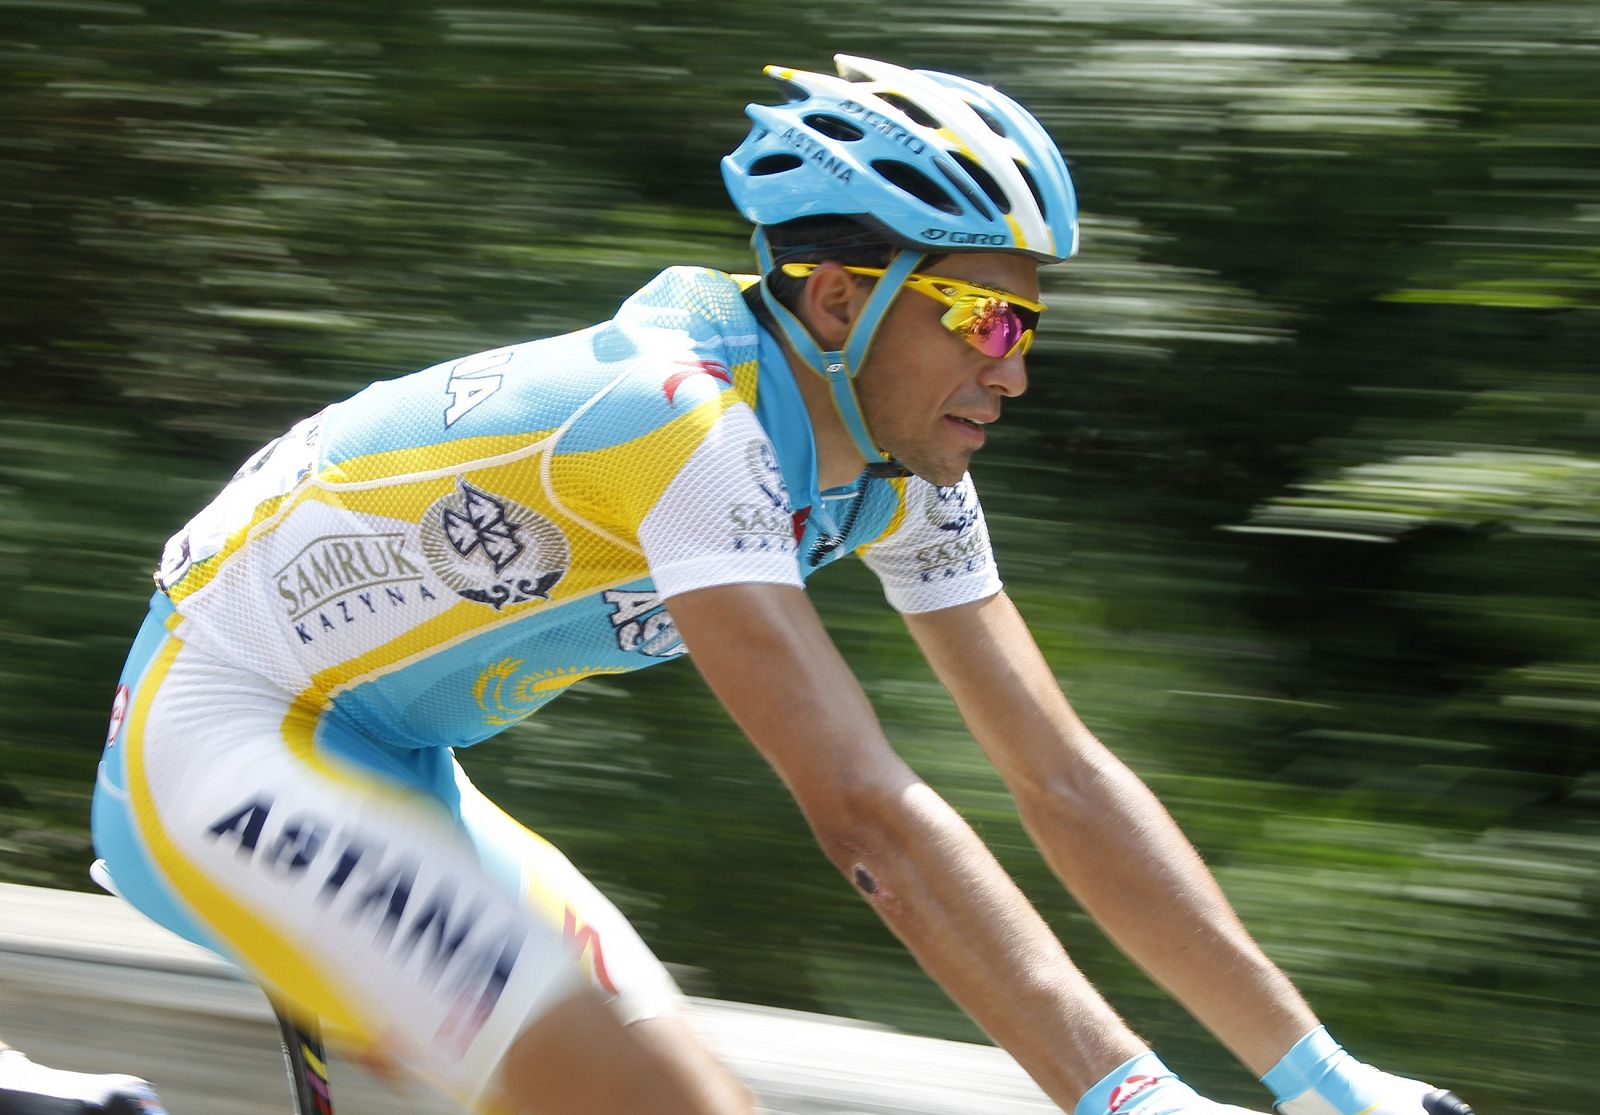 El corredor del Astana, Alberto Contador, se muestra optimista de cara al primer día pirenaico.